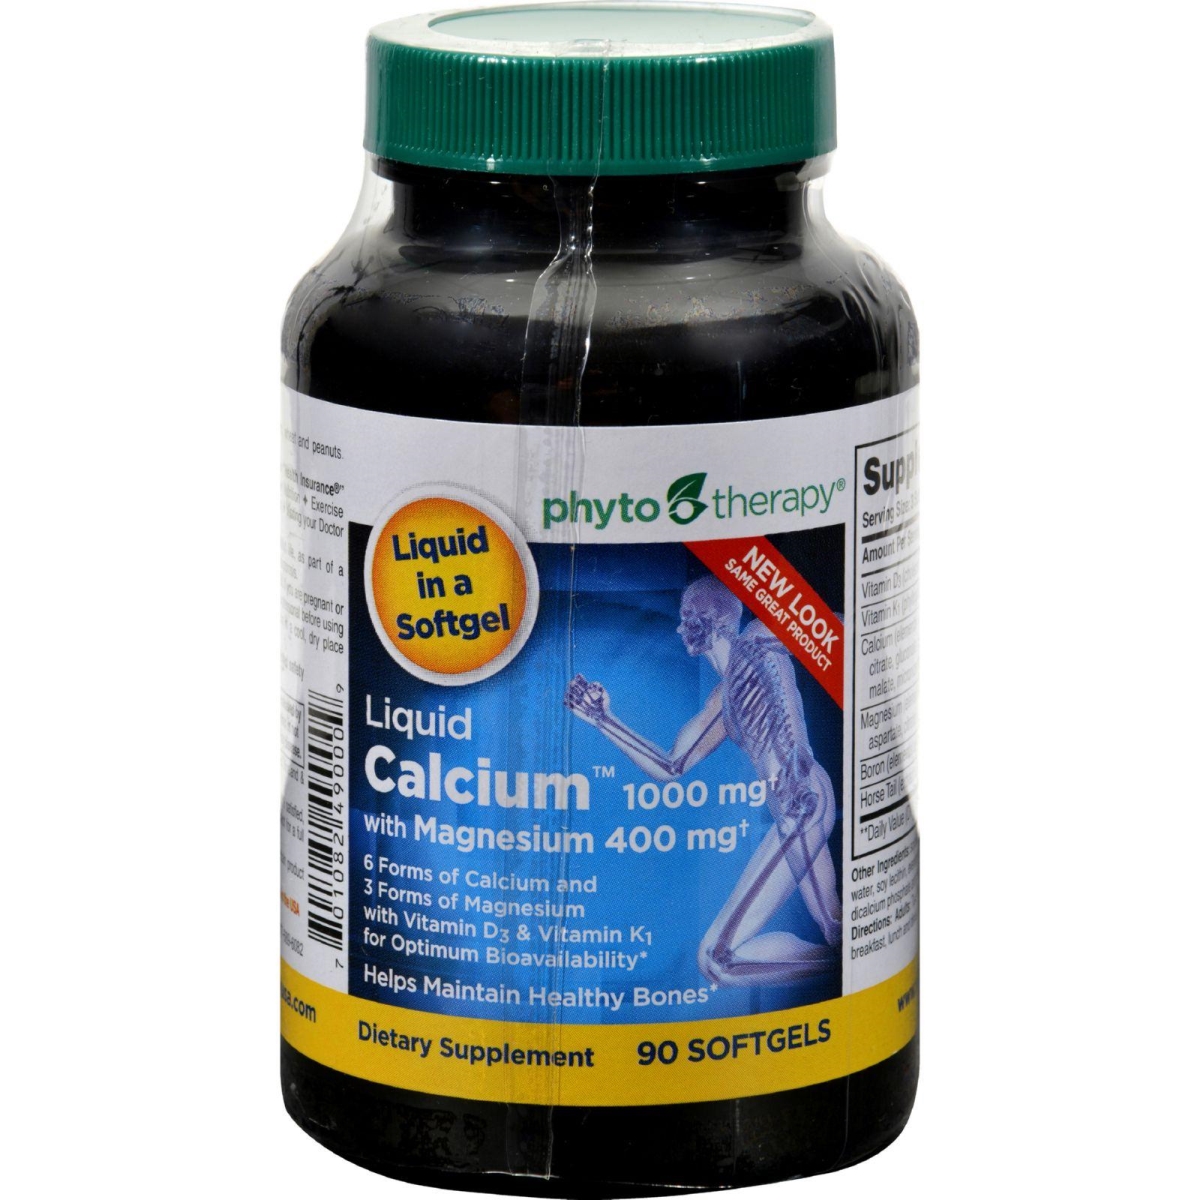 Hg0648444 1000 Mg Liquid Calcium - 90 Softgels